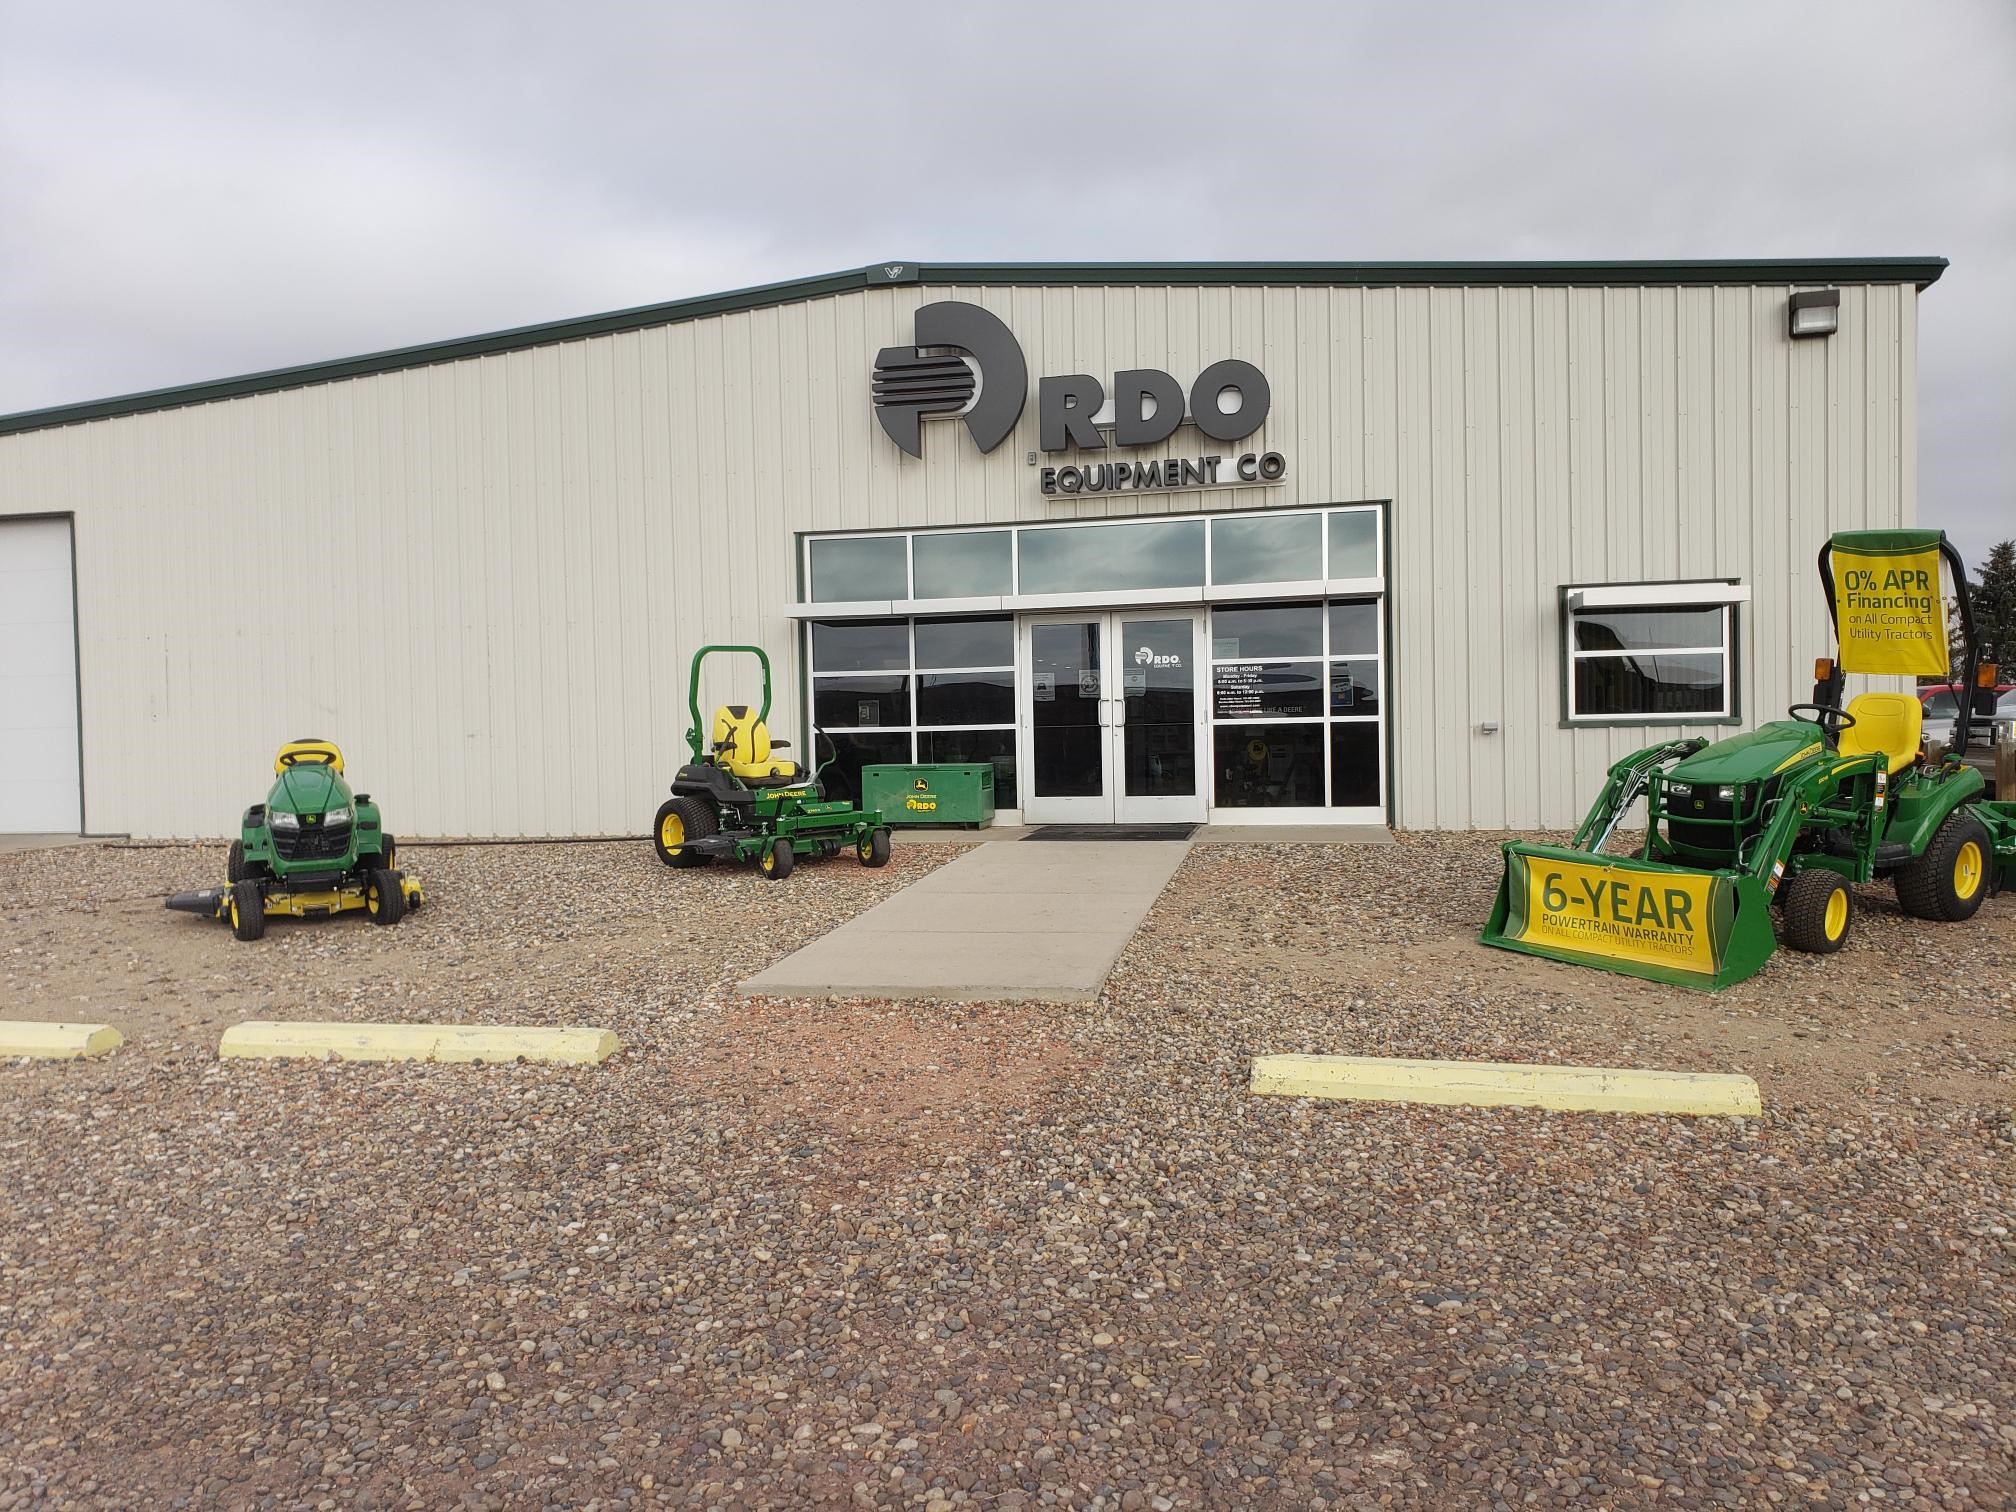 John Deere Lawn and Garden Equipment at RDO Equipment Co. in Hazen, ND